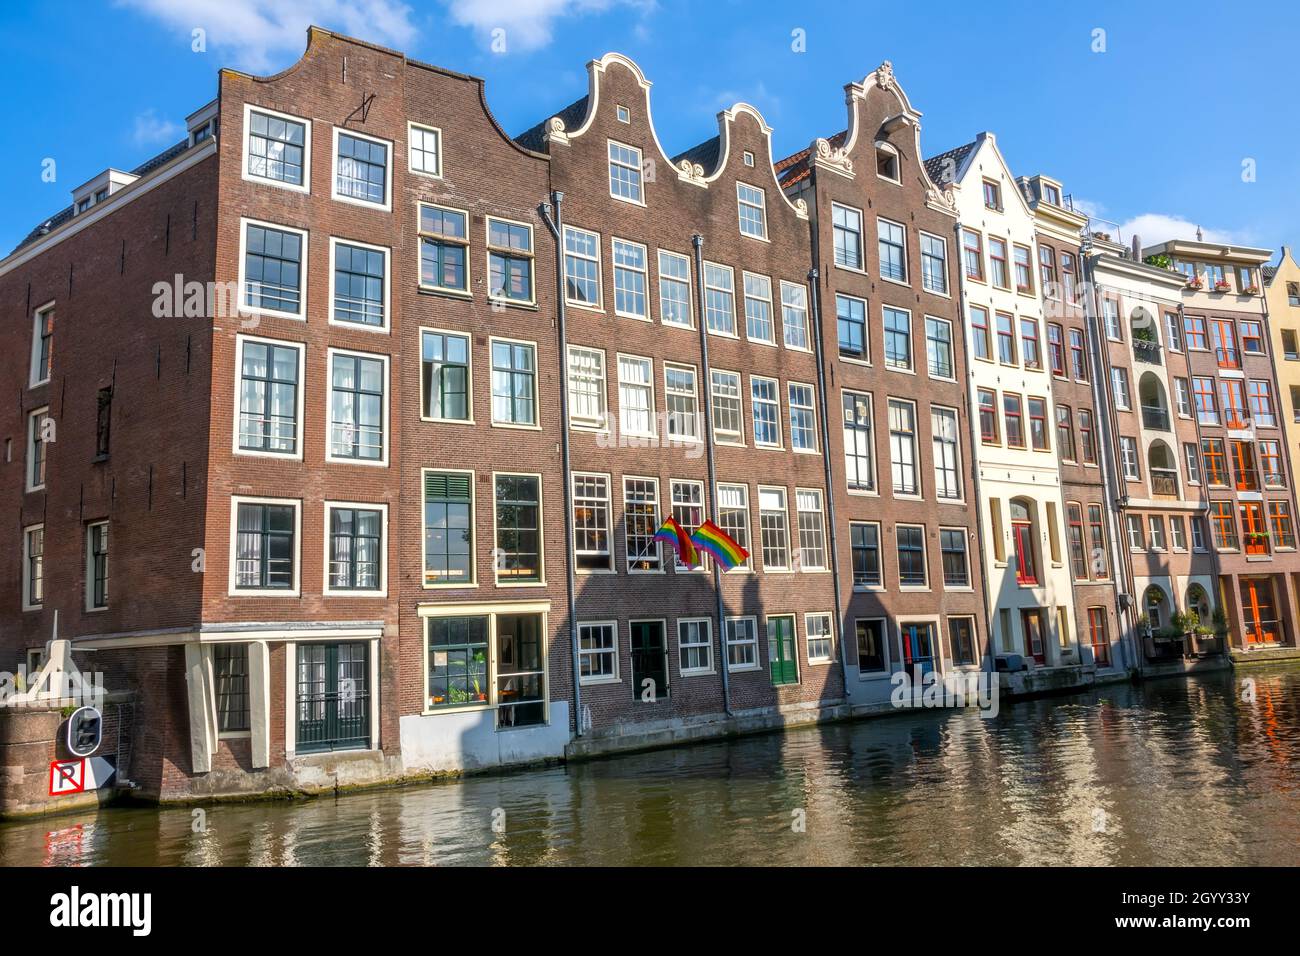 Pays-Bas.Journée ensoleillée sur le canal d'Amsterdam.Maisons traditionnelles et deux drapeaux de la communauté LGBT sur la façade Banque D'Images